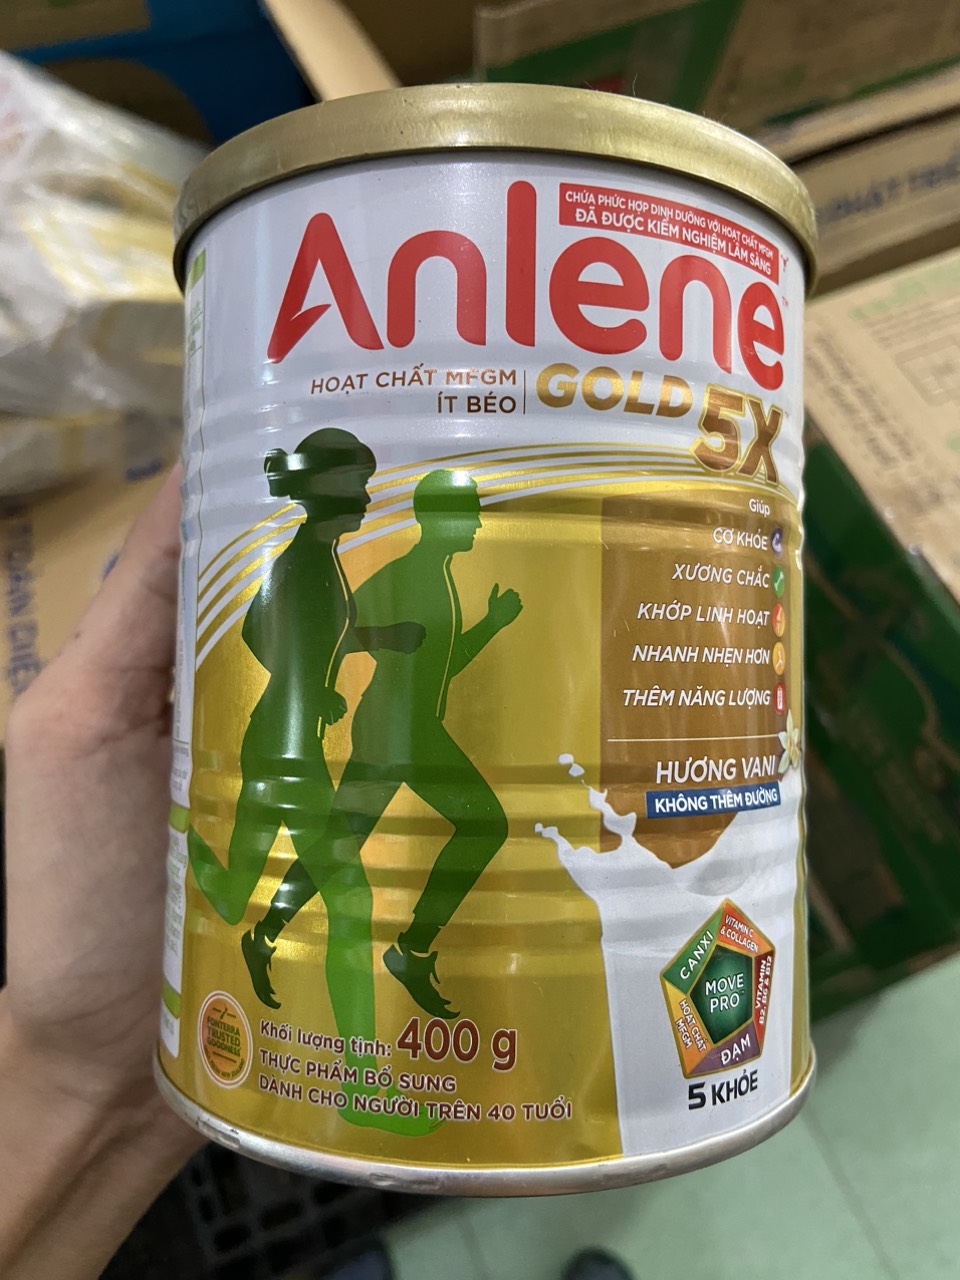 Sữa bột Anlene GOLD 5X hương vani lon 400g dành cho người từ 40 tuổi - HSD